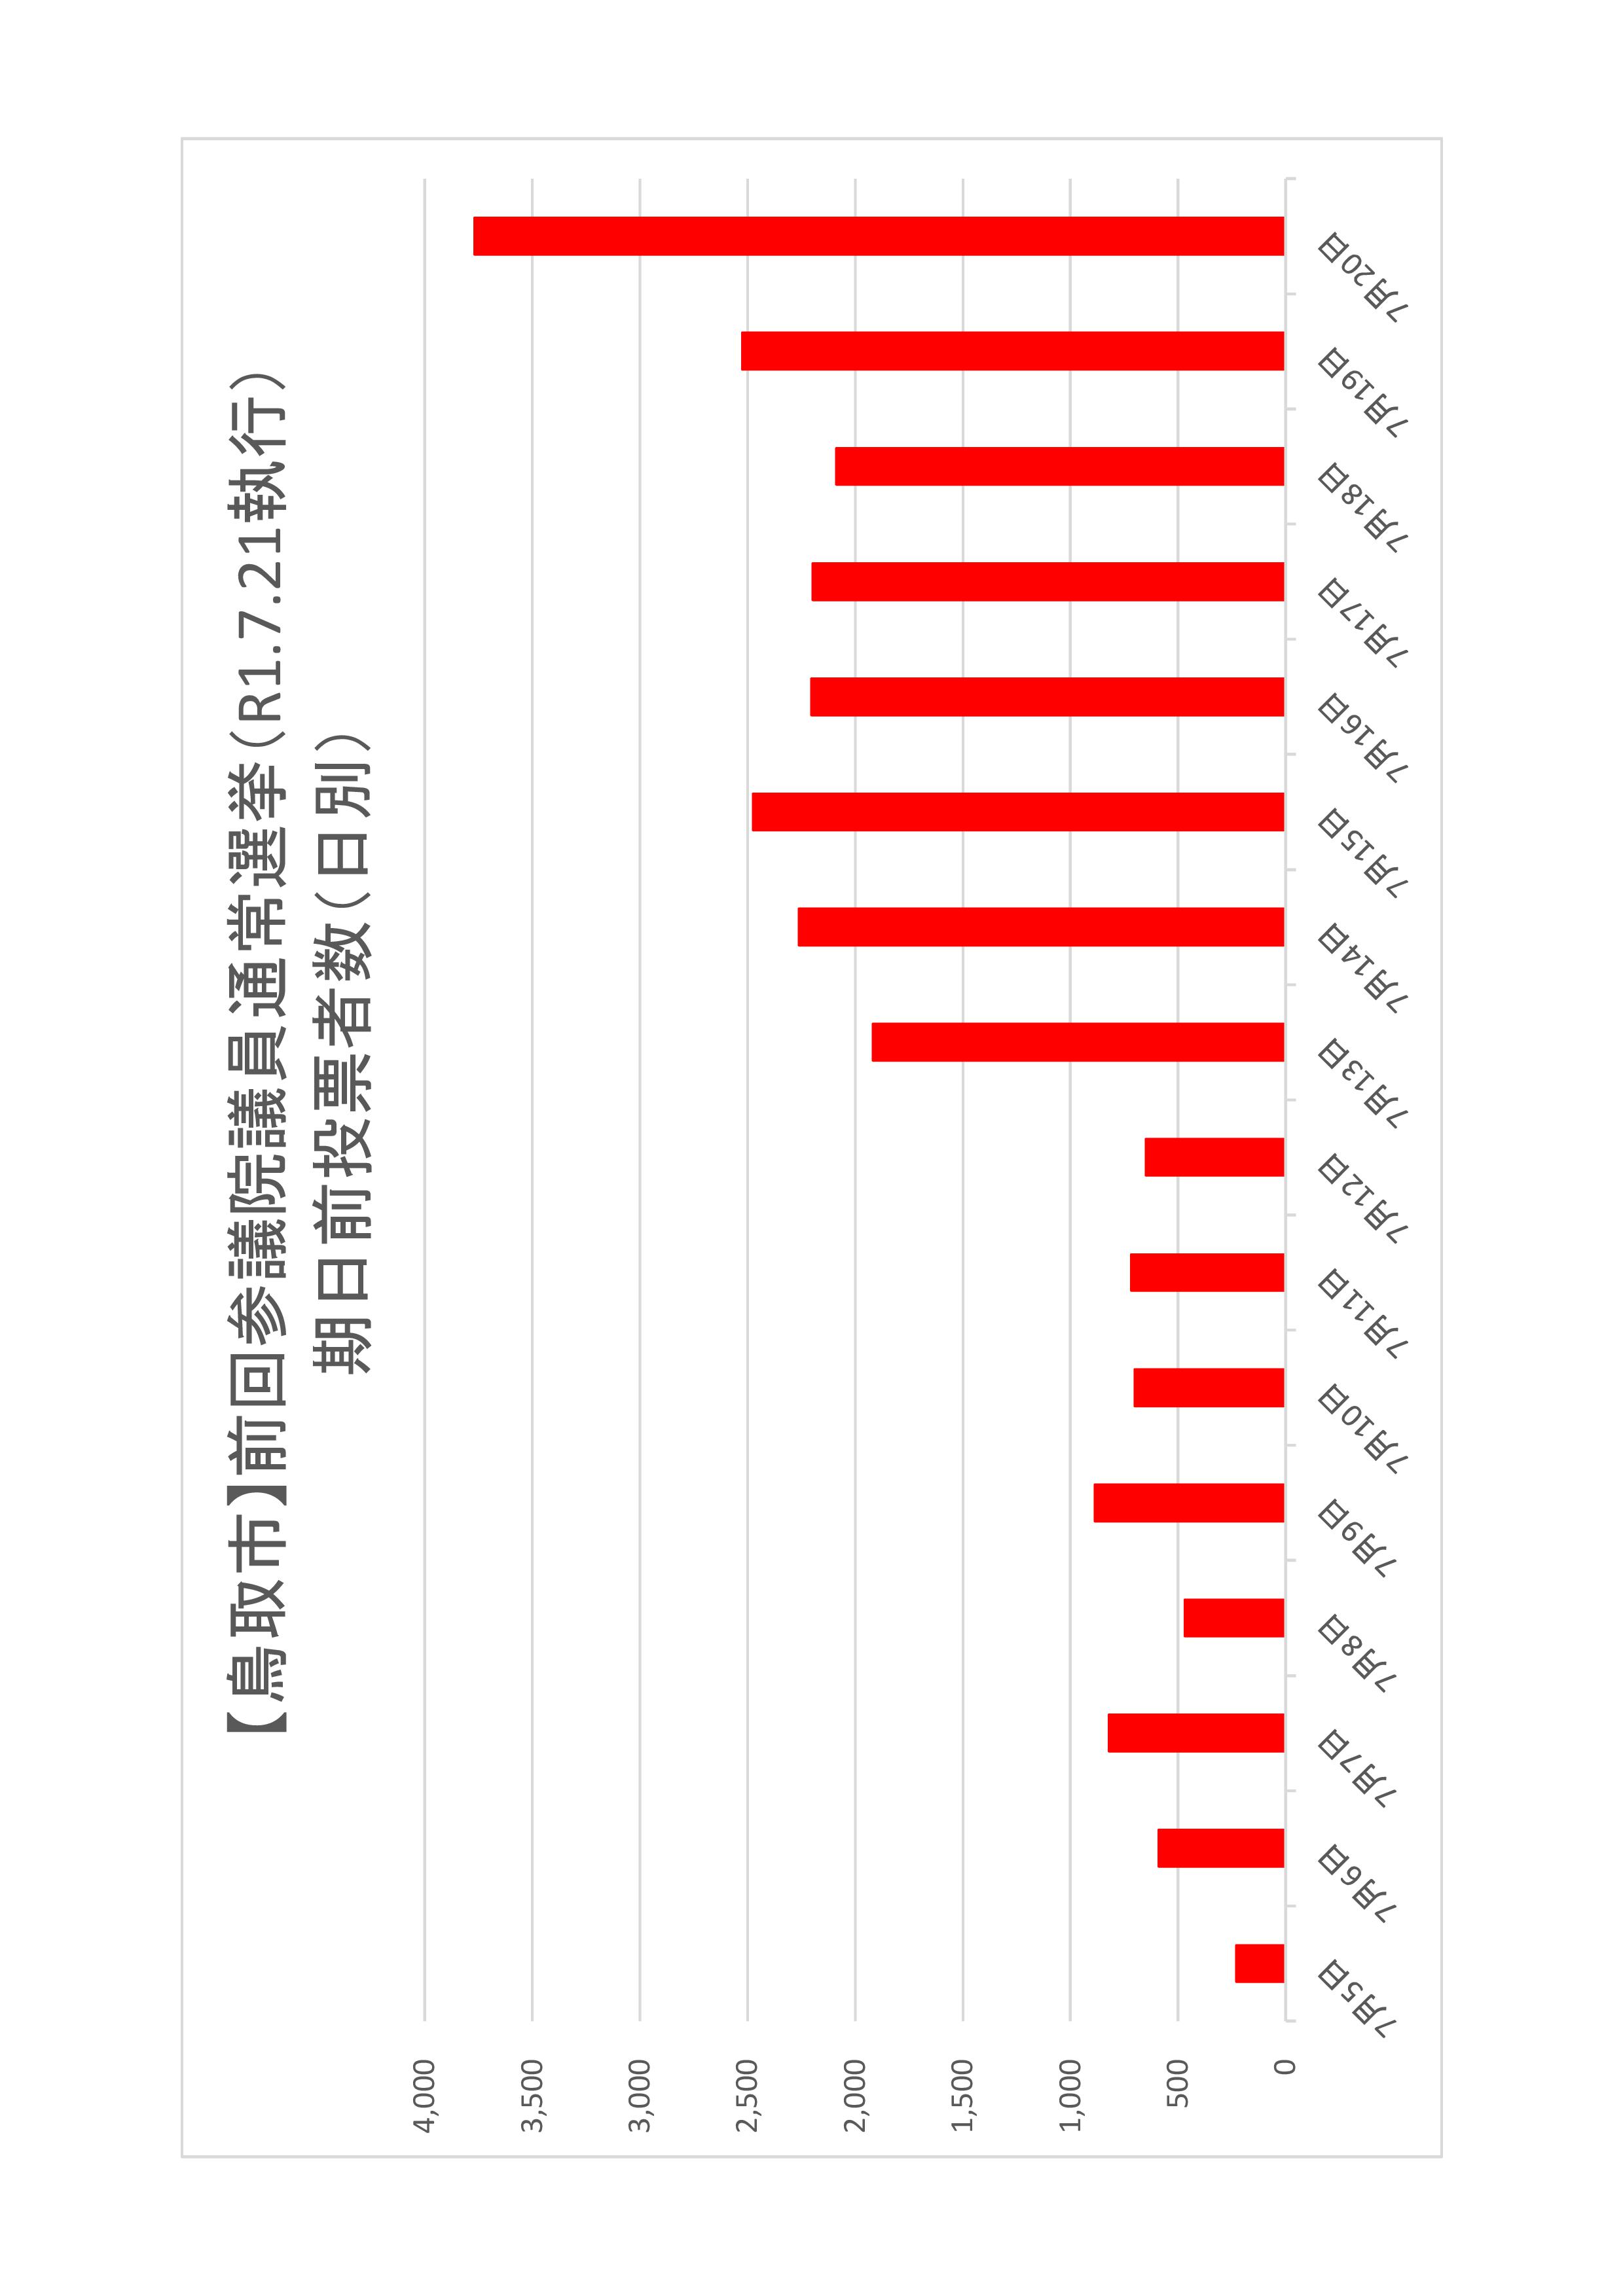 鳥取市の日別期日前投票者数のグラフ